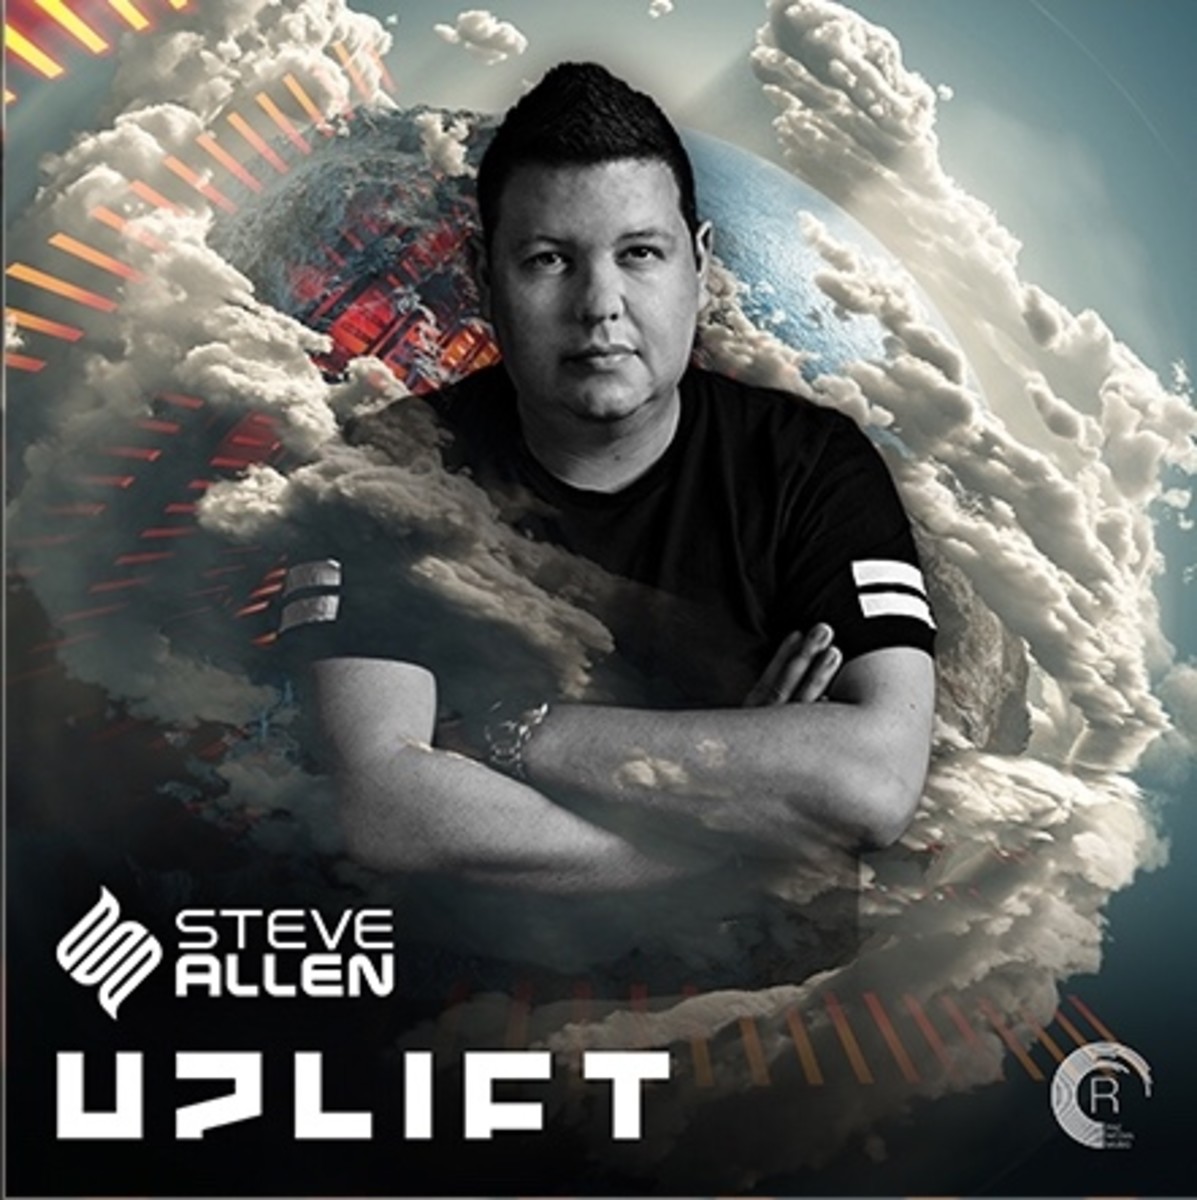 Steve Allen - Uplift